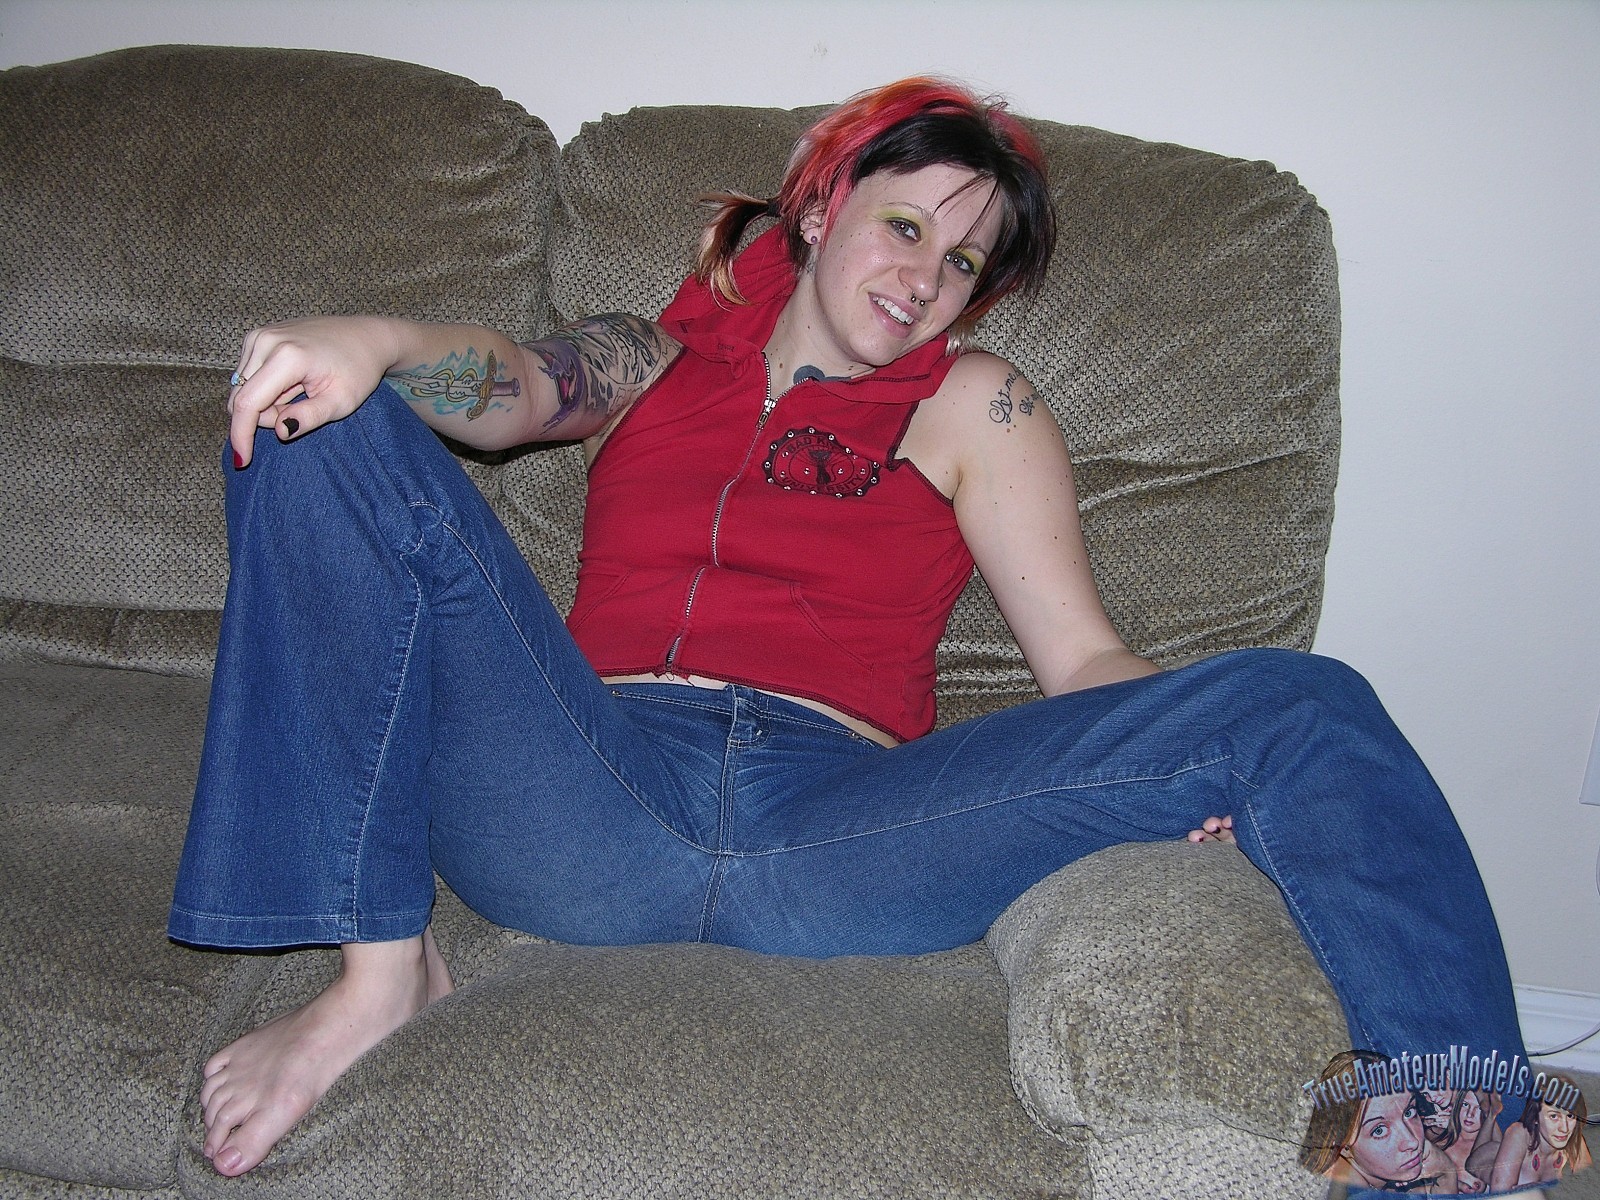 Une jeune amateur punk rock tatouée montre son trou du cul rose et poilu.
 #67504388